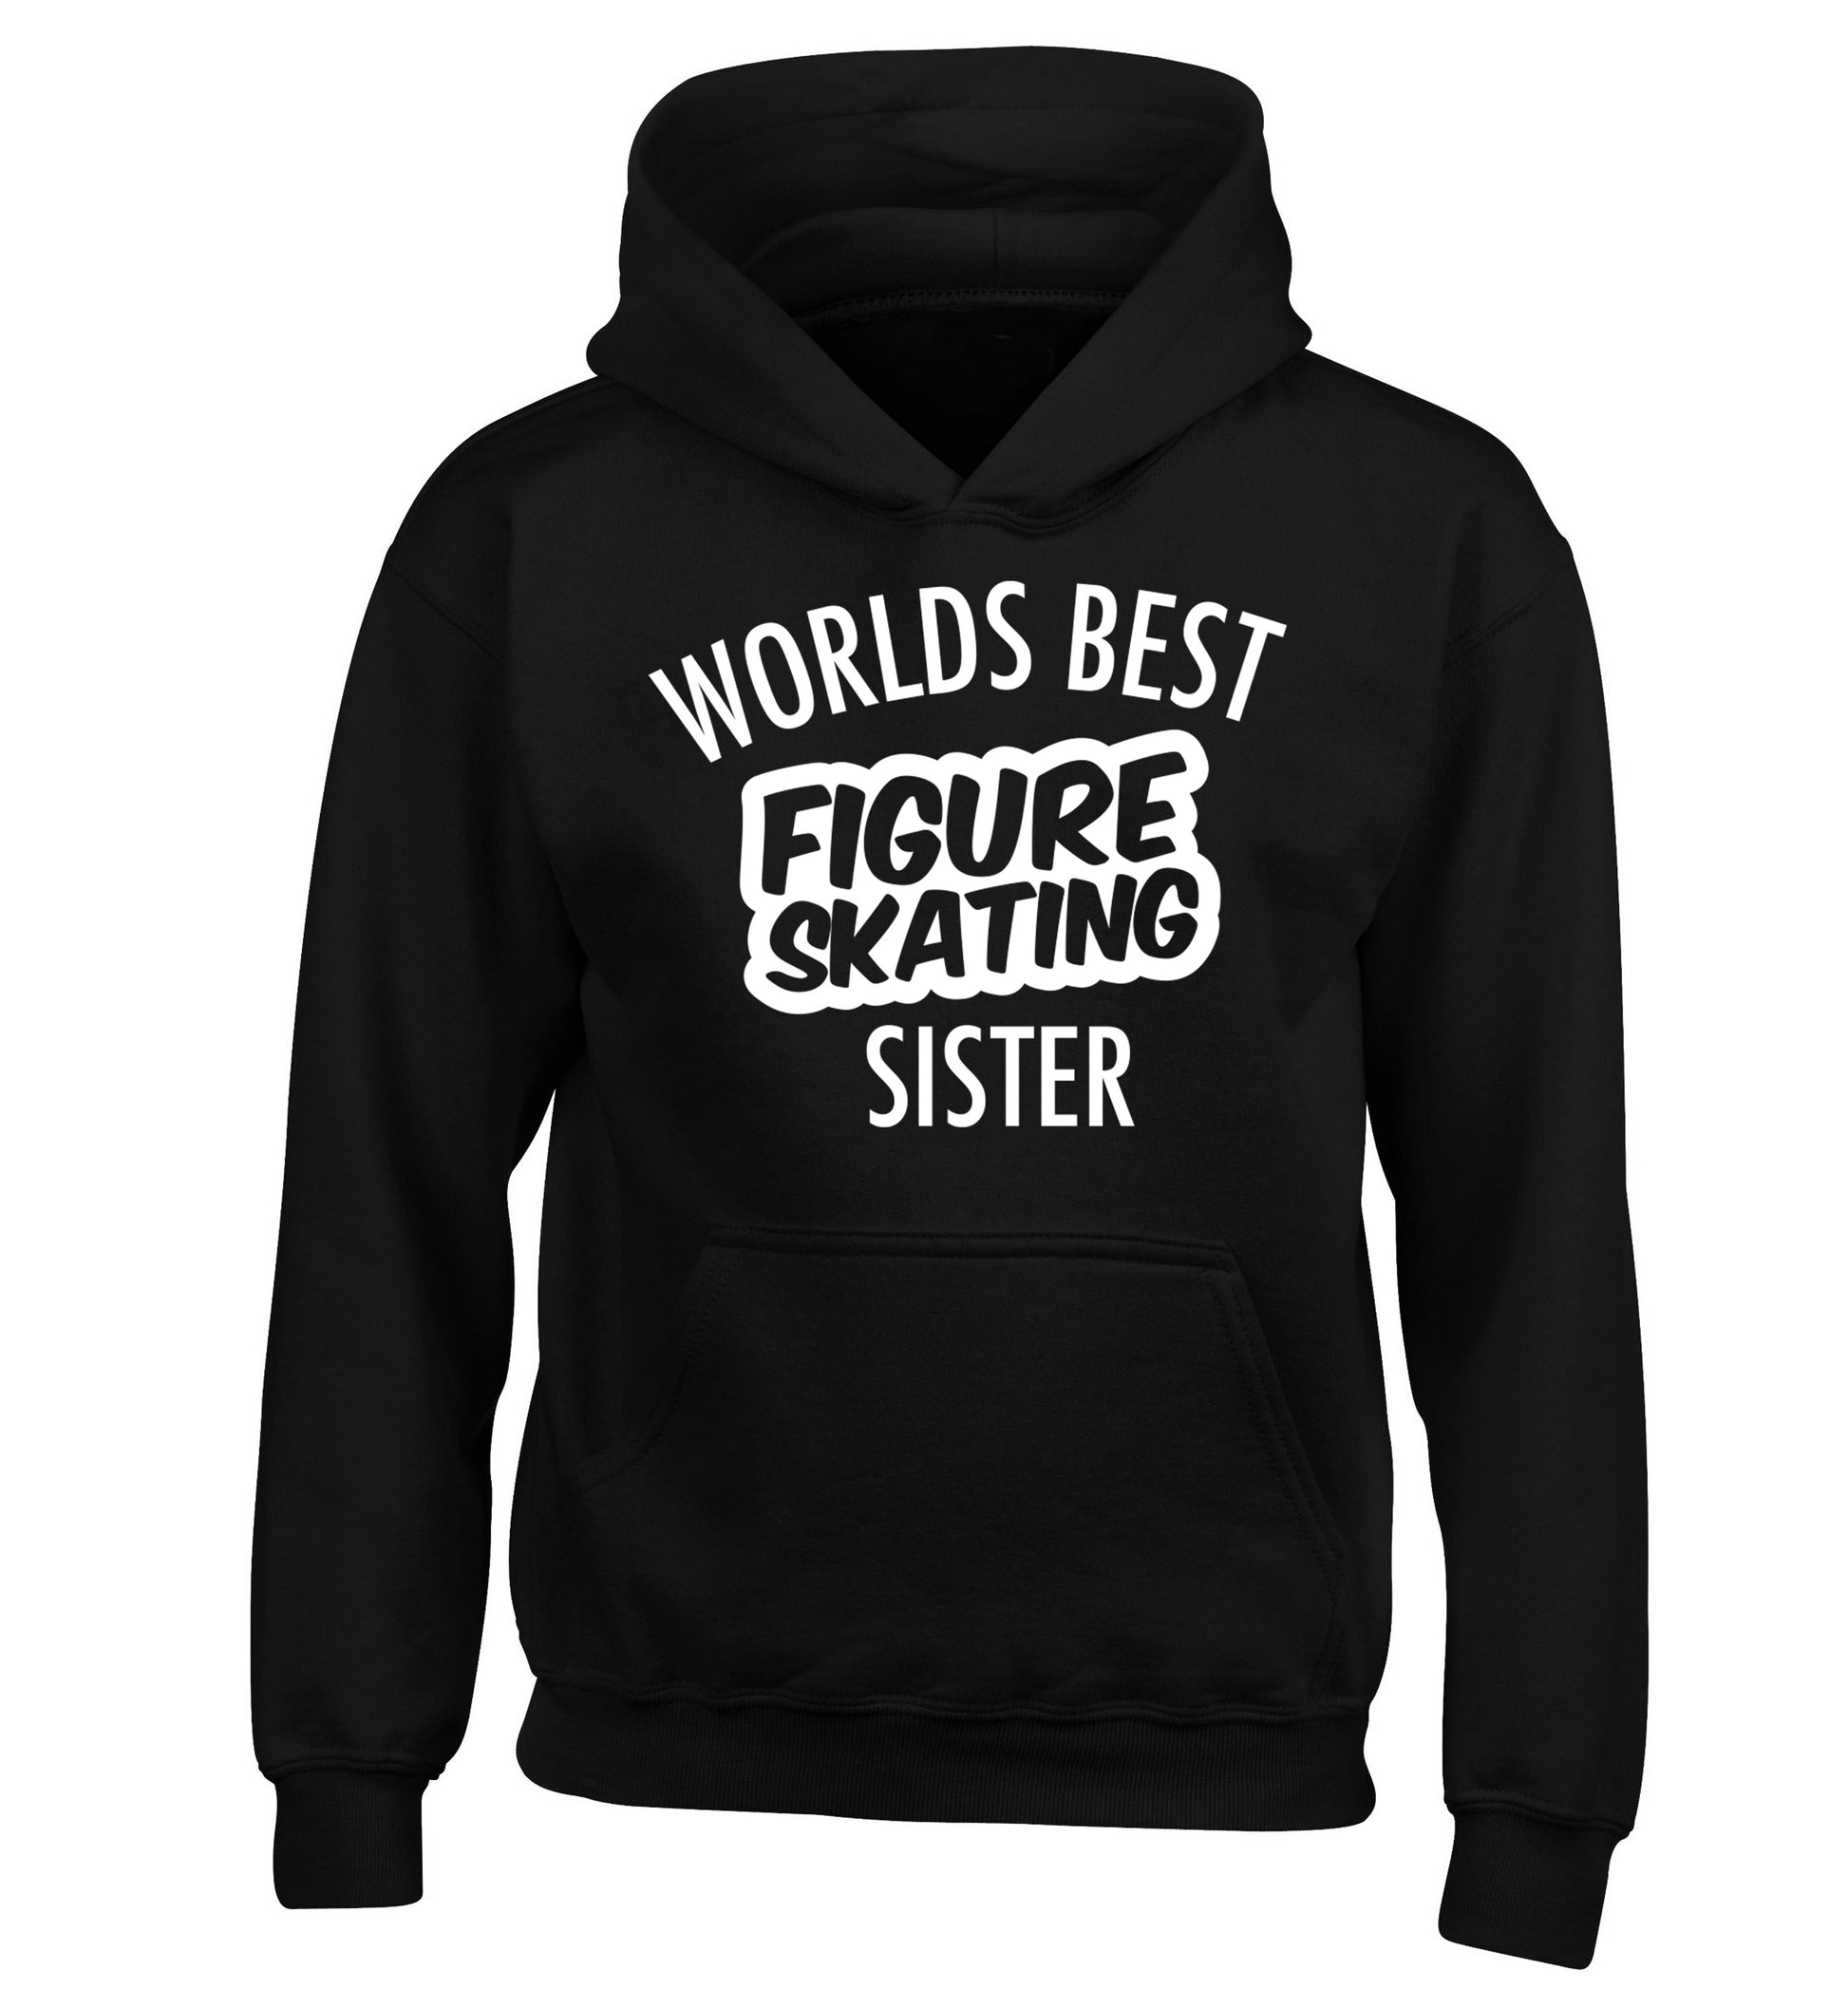 Worlds best figure skating sisterchildren's black hoodie 12-14 Years